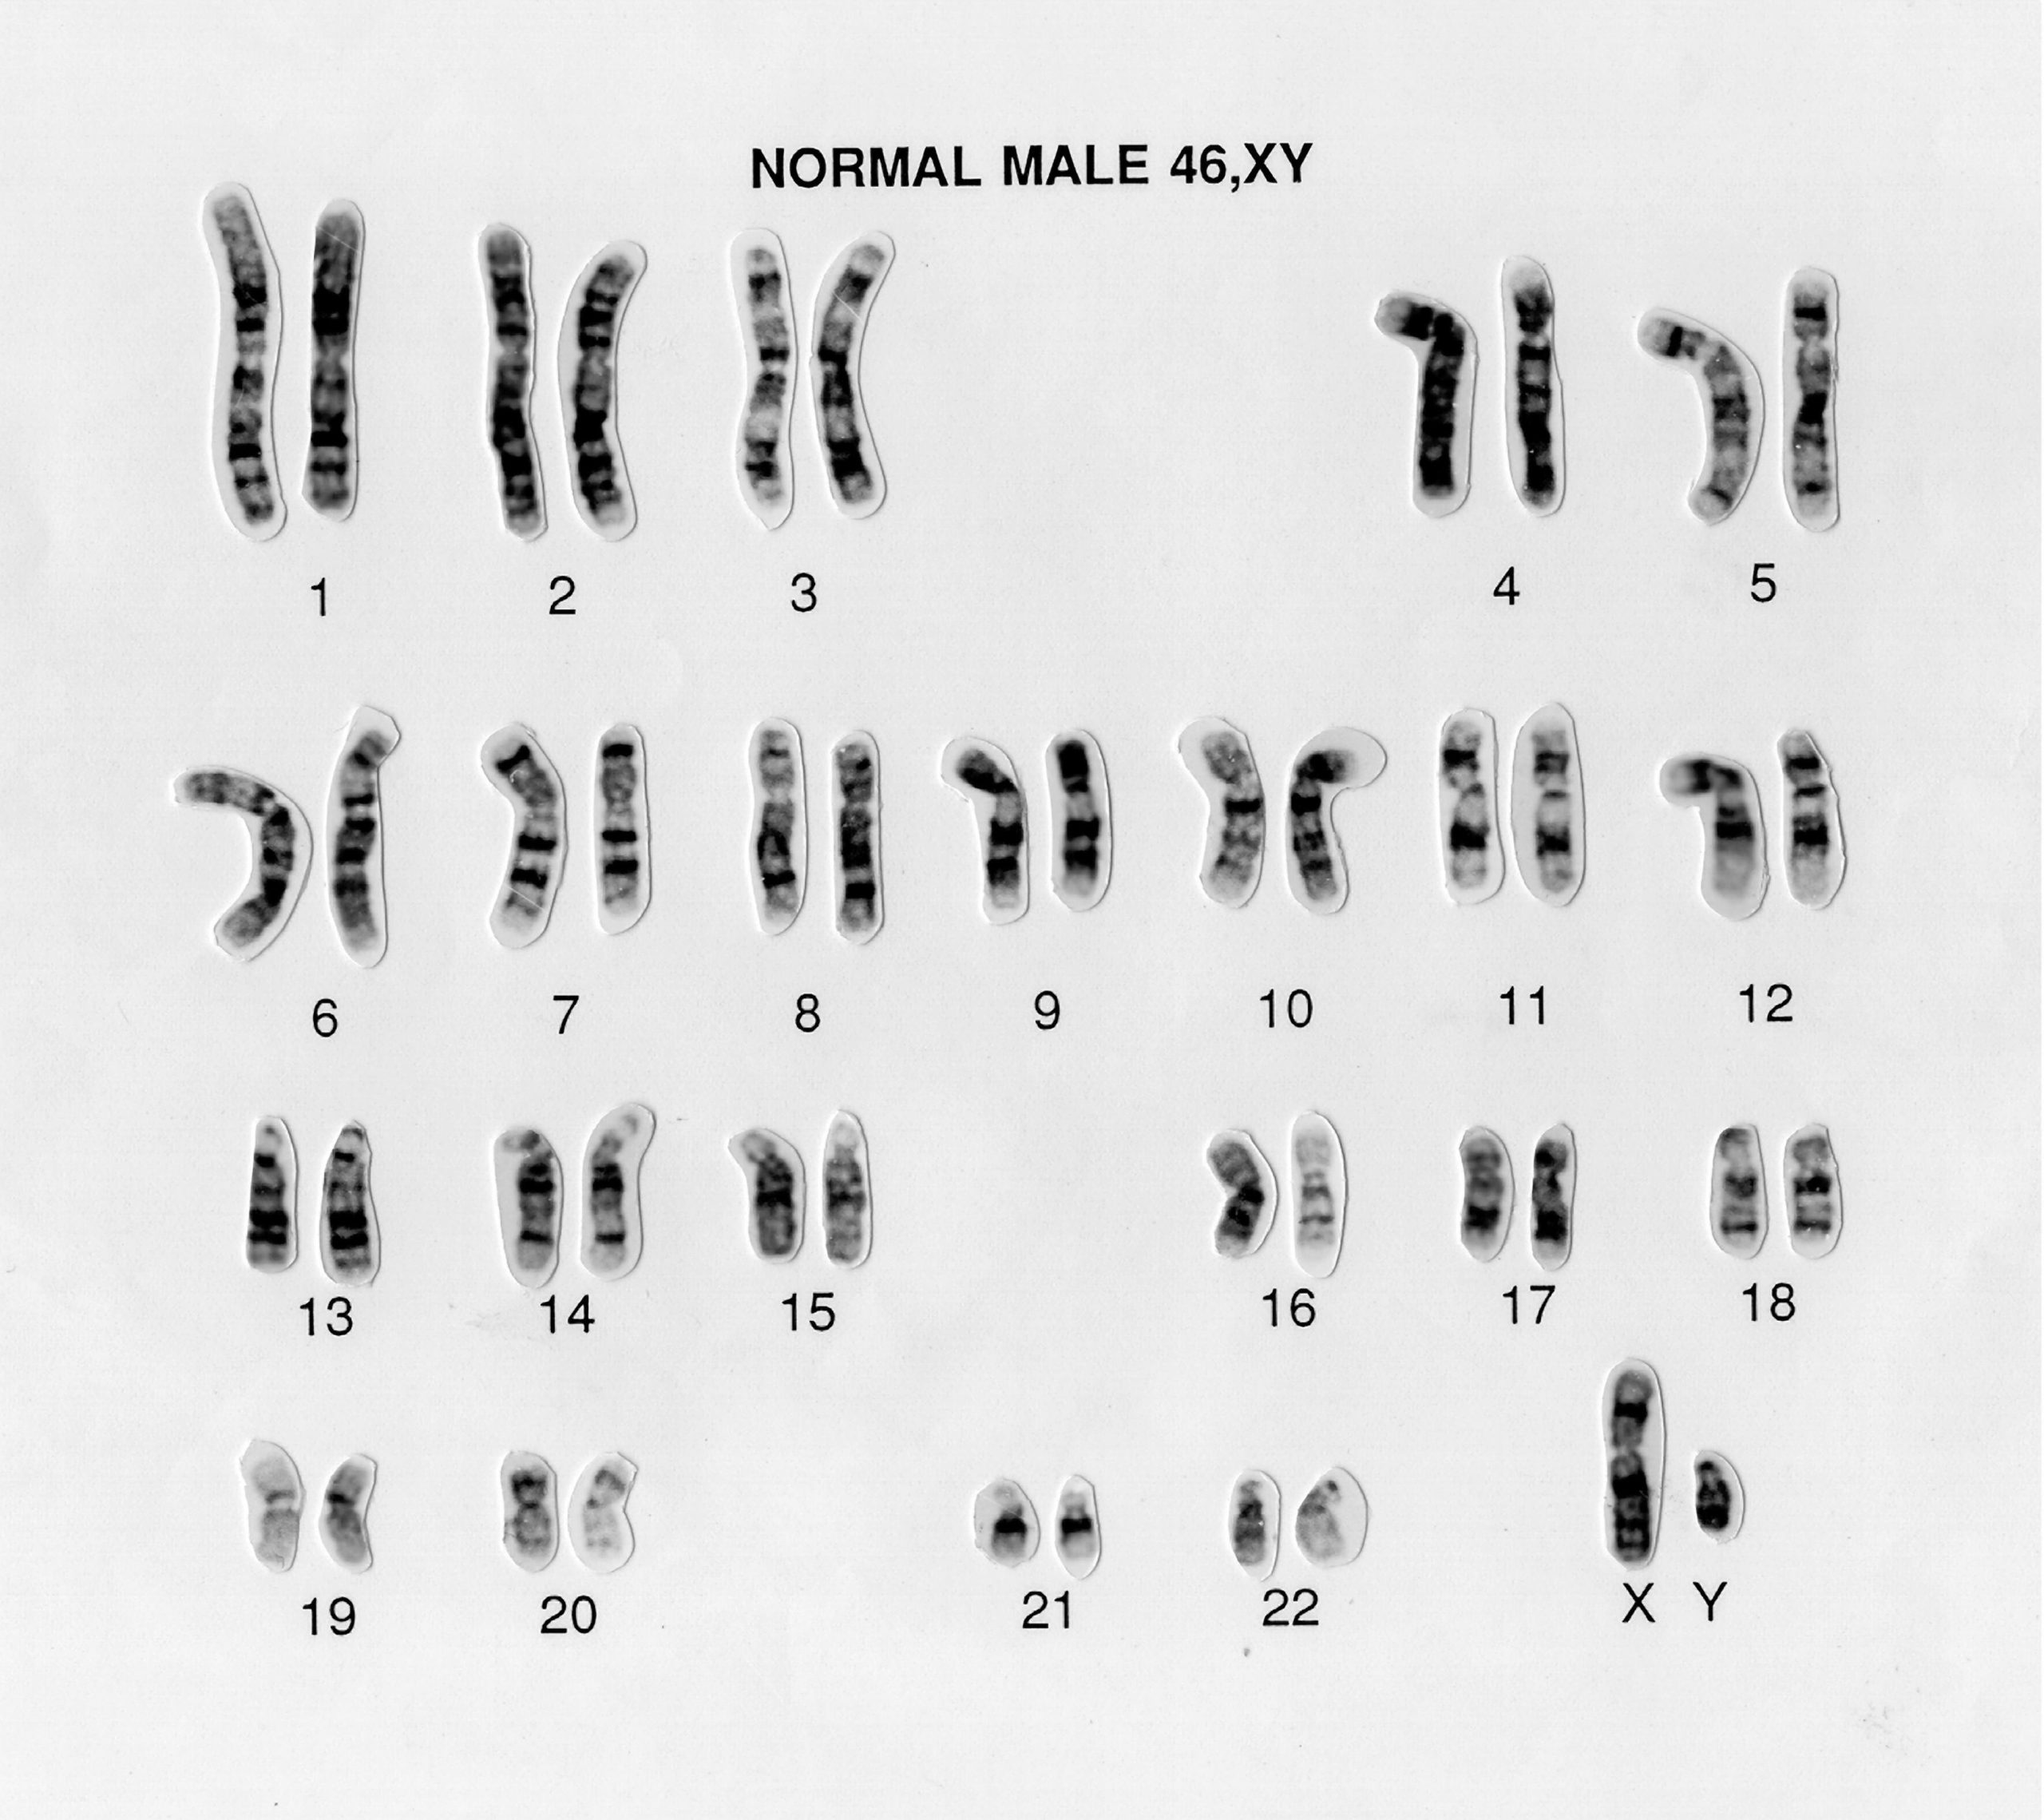 Male 46,XY human karyotype